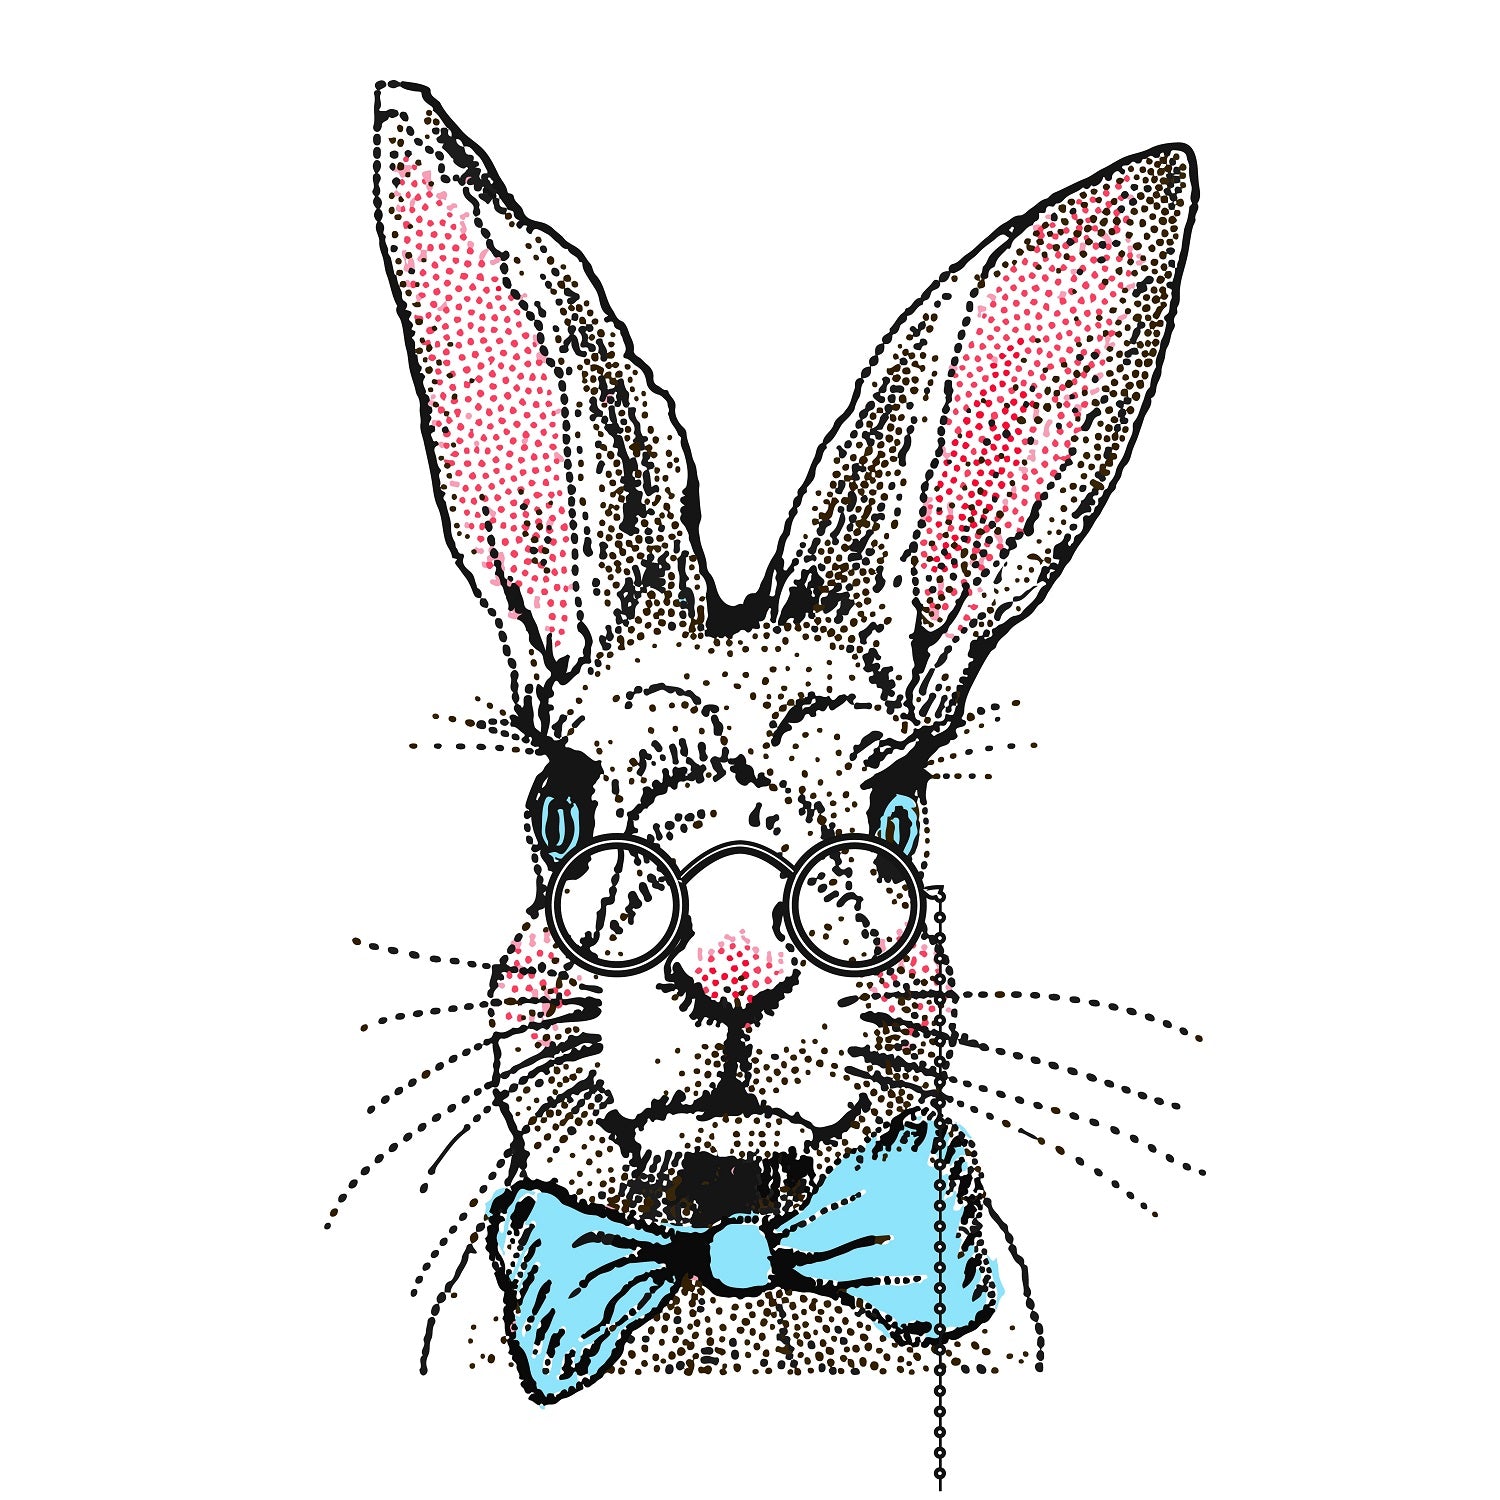 Mr. Rabbit (Basis Motiv)